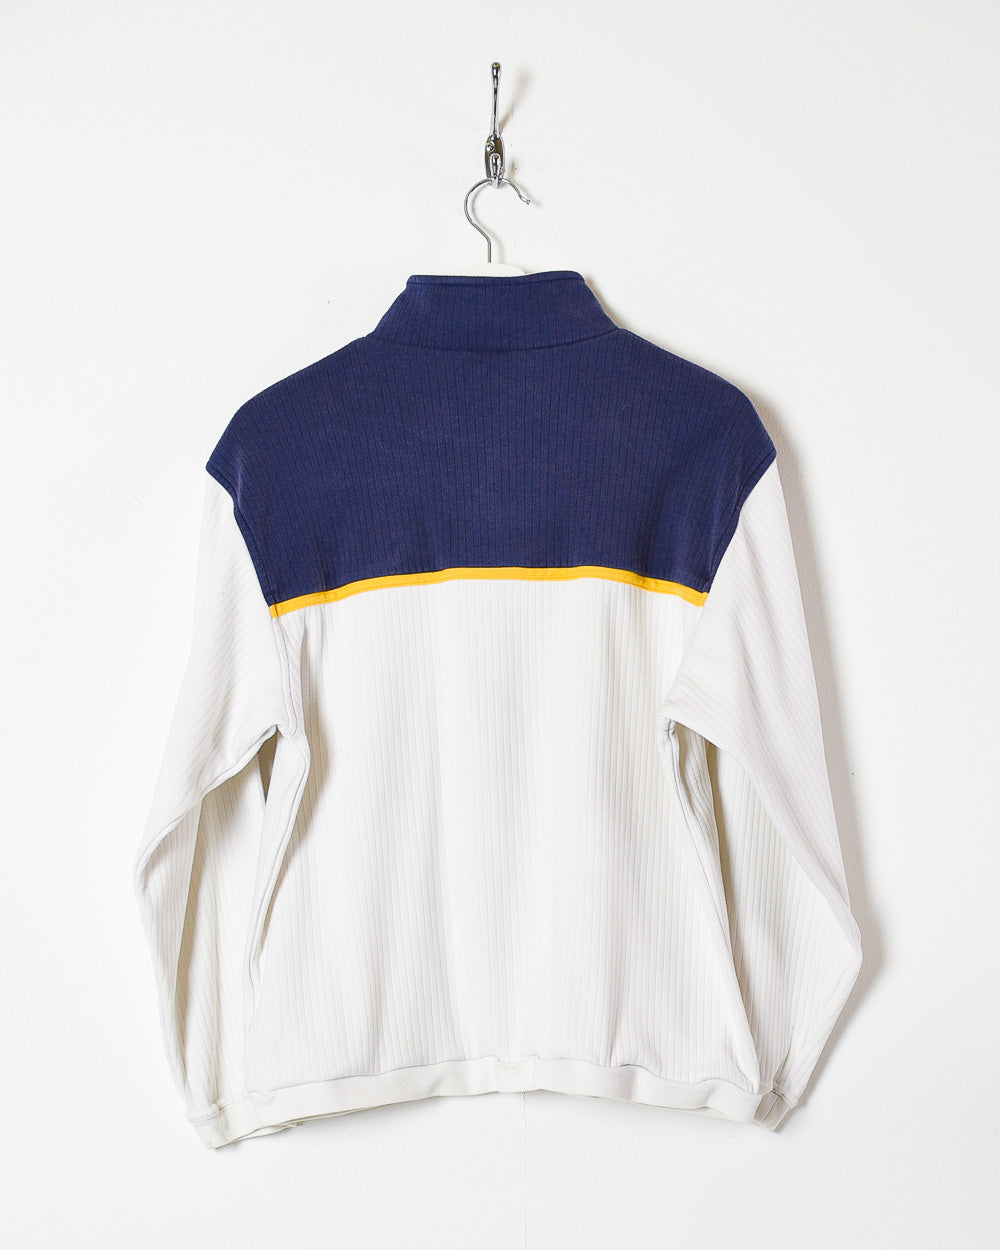 White Nike 1/4 Zip Women's Sweatshirt - Medium